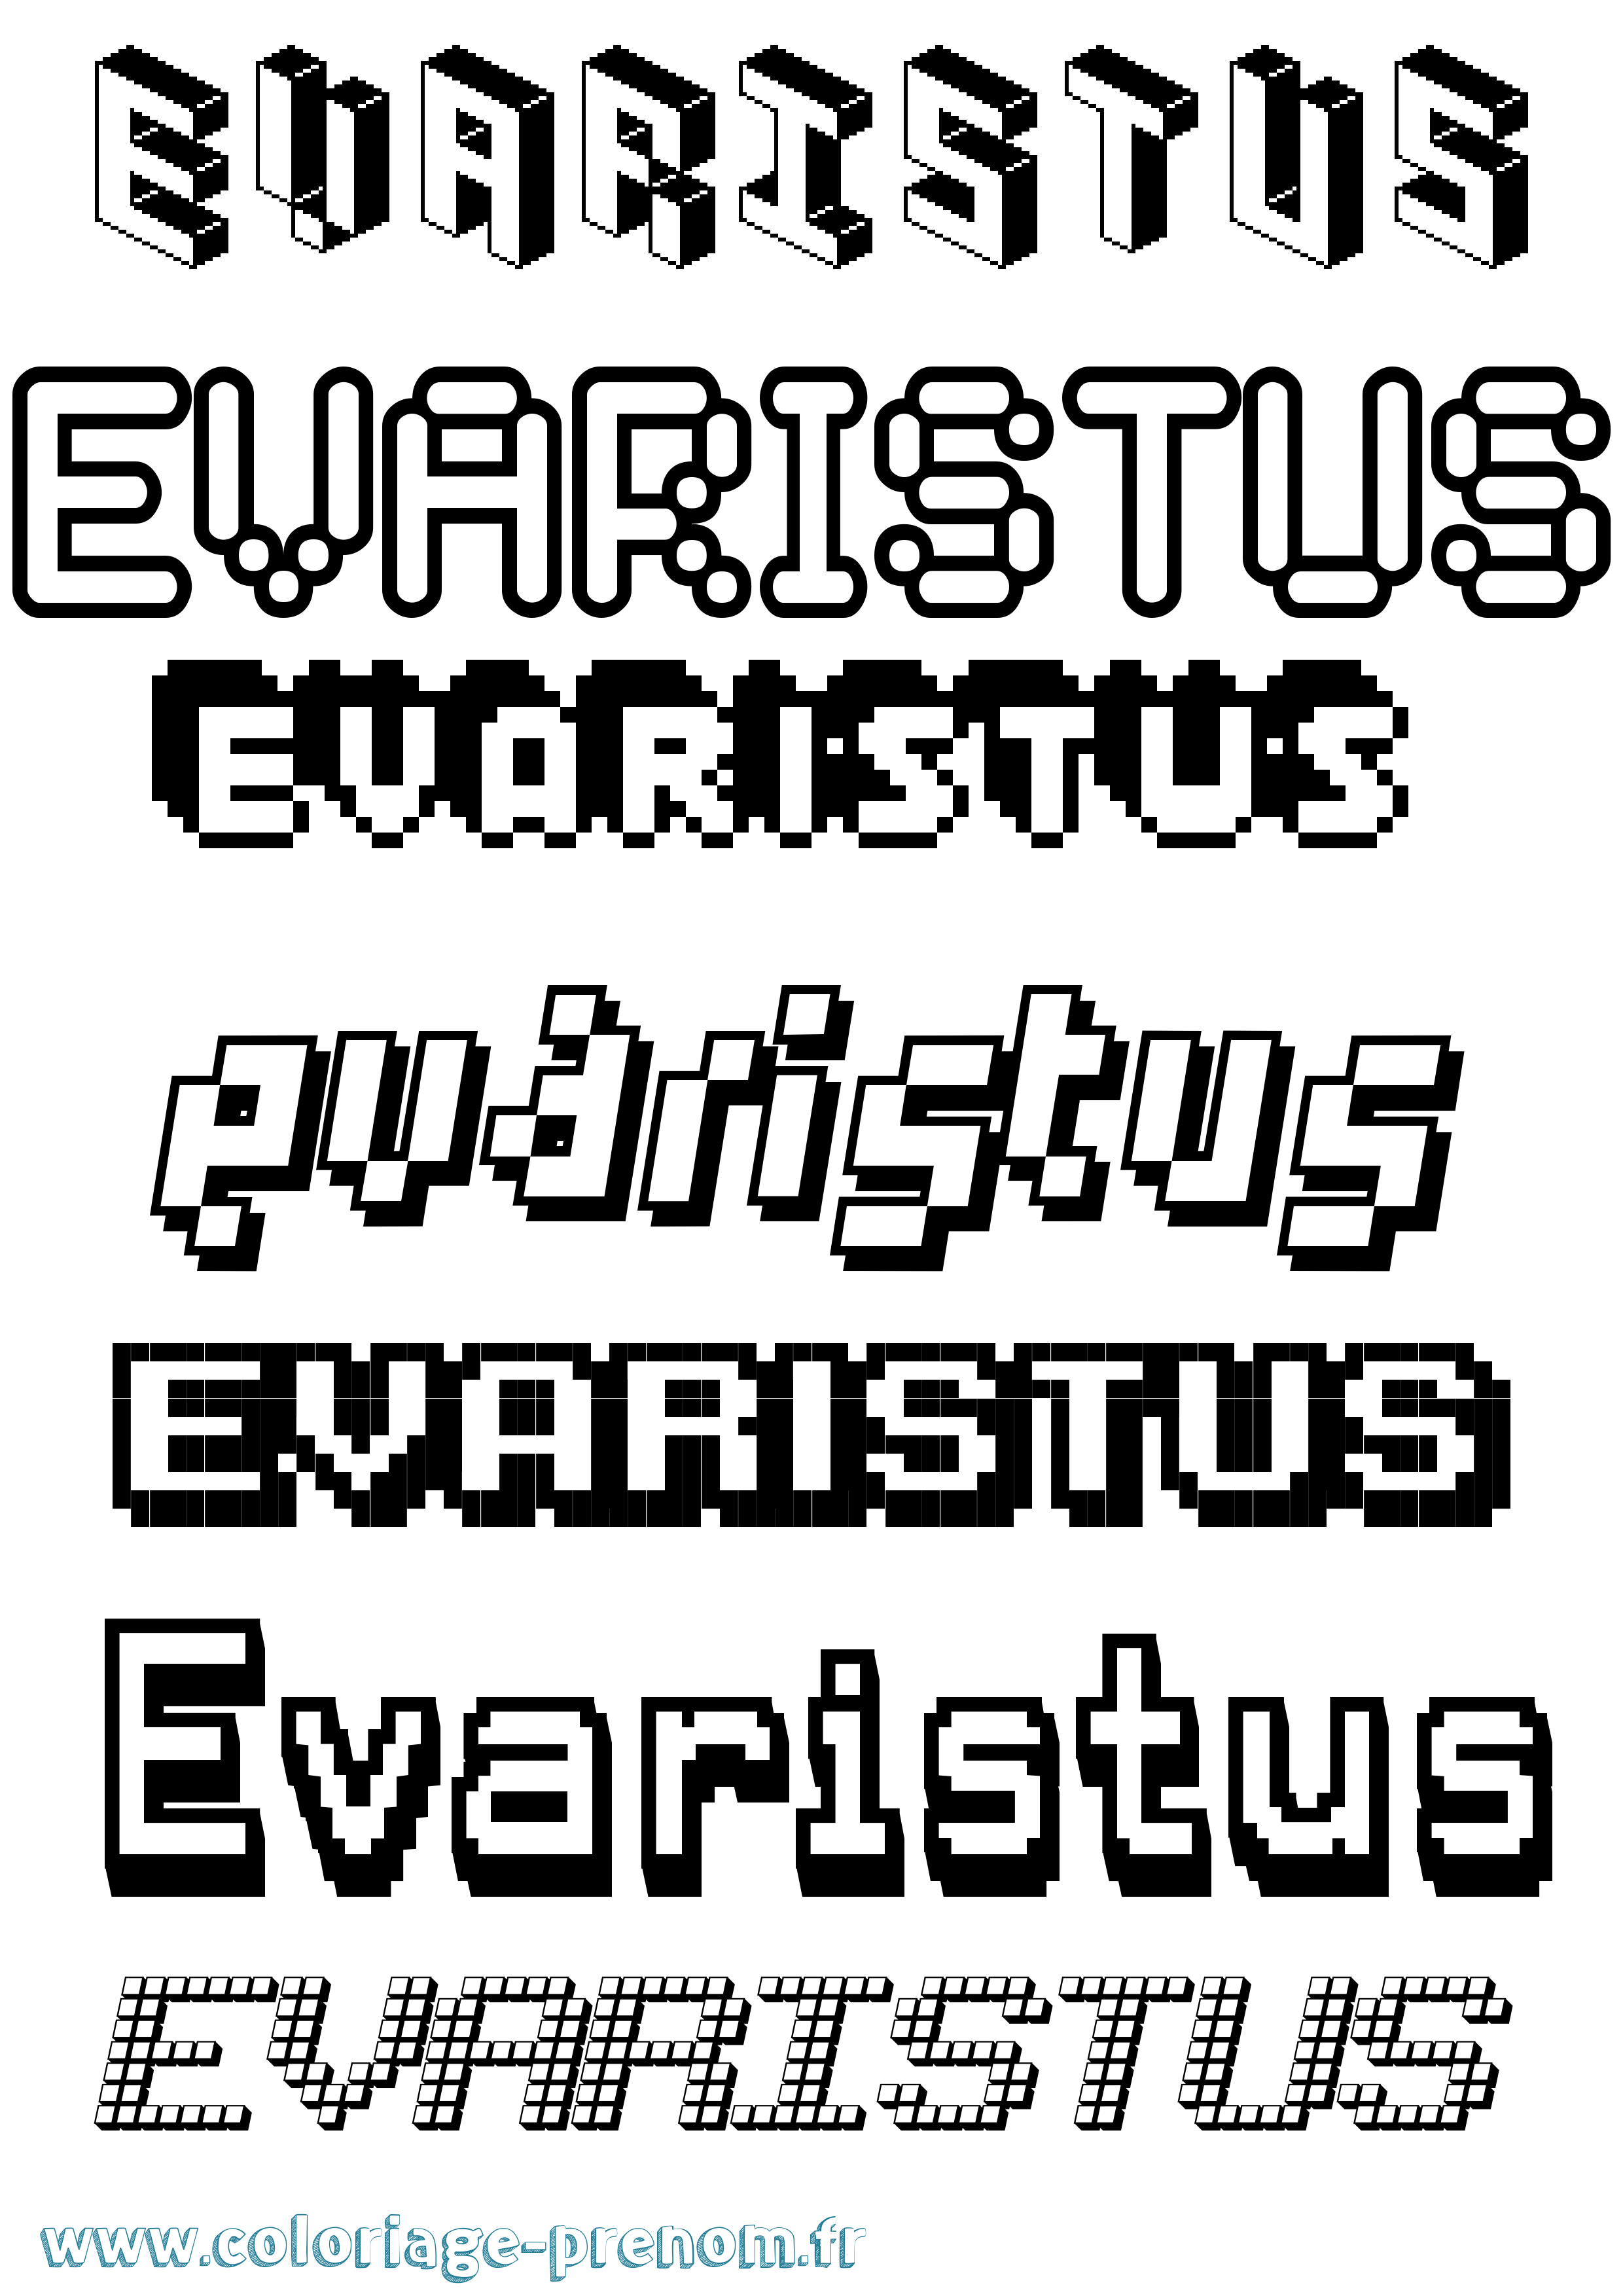 Coloriage prénom Evaristus Pixel